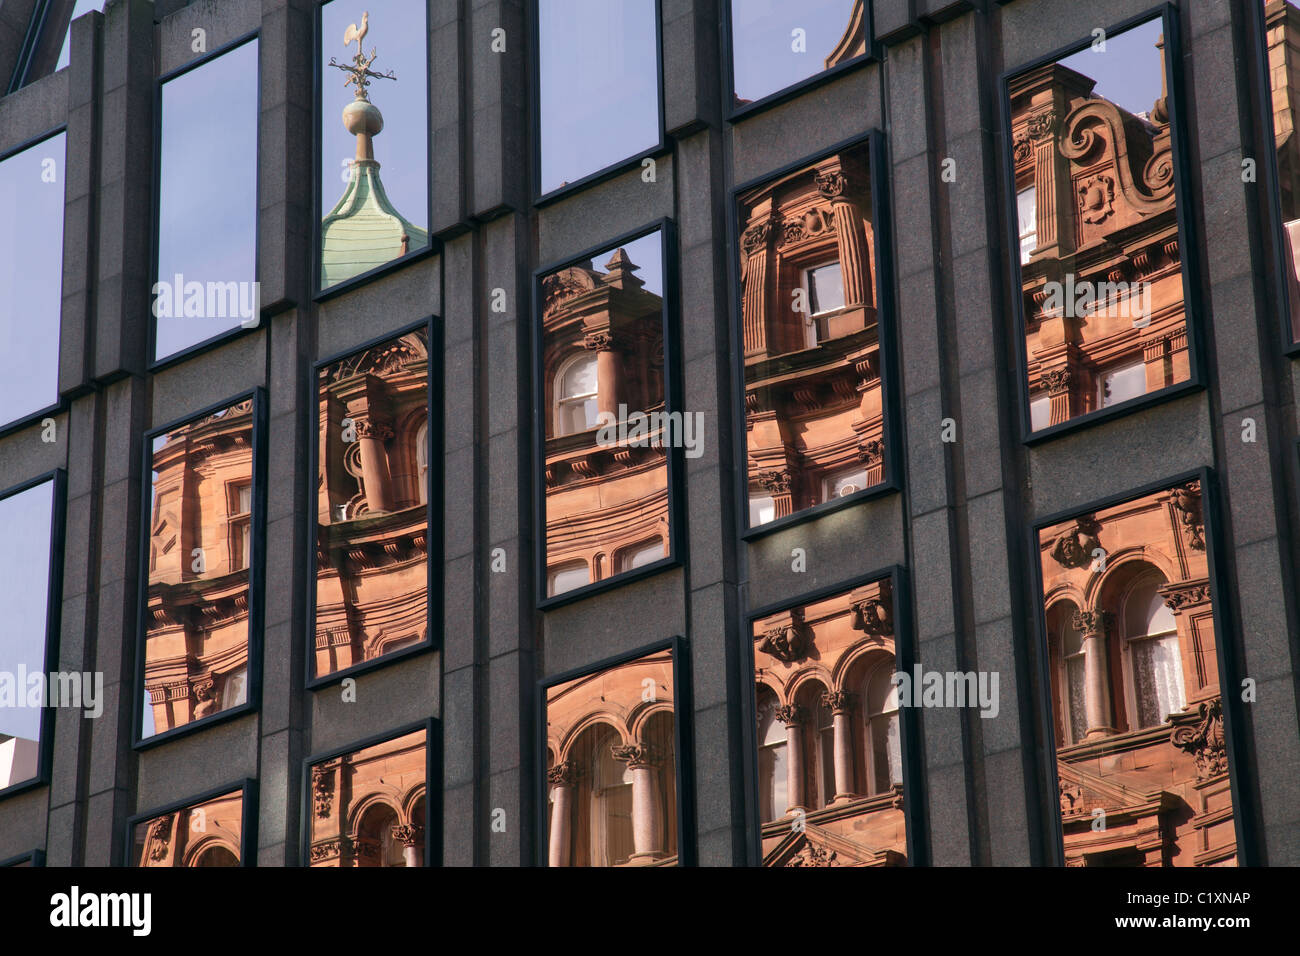 Reflet de l'ancien bâtiment Connal en grès rouge dans la façade en verre miroir d'un bâtiment, West George Street, centre-ville de Glasgow, Écosse, Royaume-Uni Banque D'Images